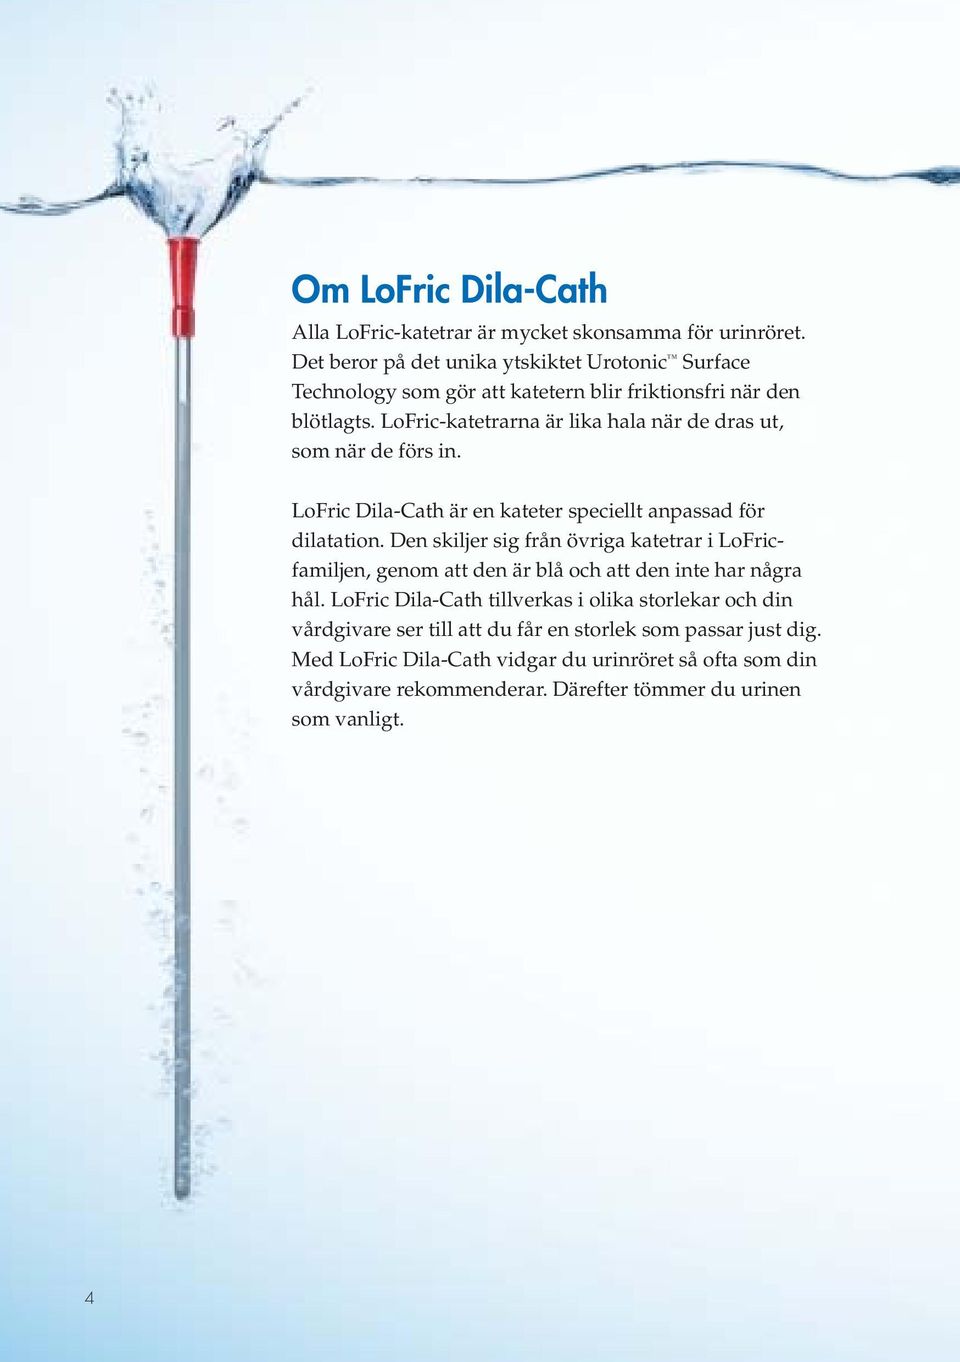 LoFric-katetrarna är lika hala när de dras ut, som när de förs in. LoFric Dila-Cath är en kateter speciellt anpassad för dilatation.